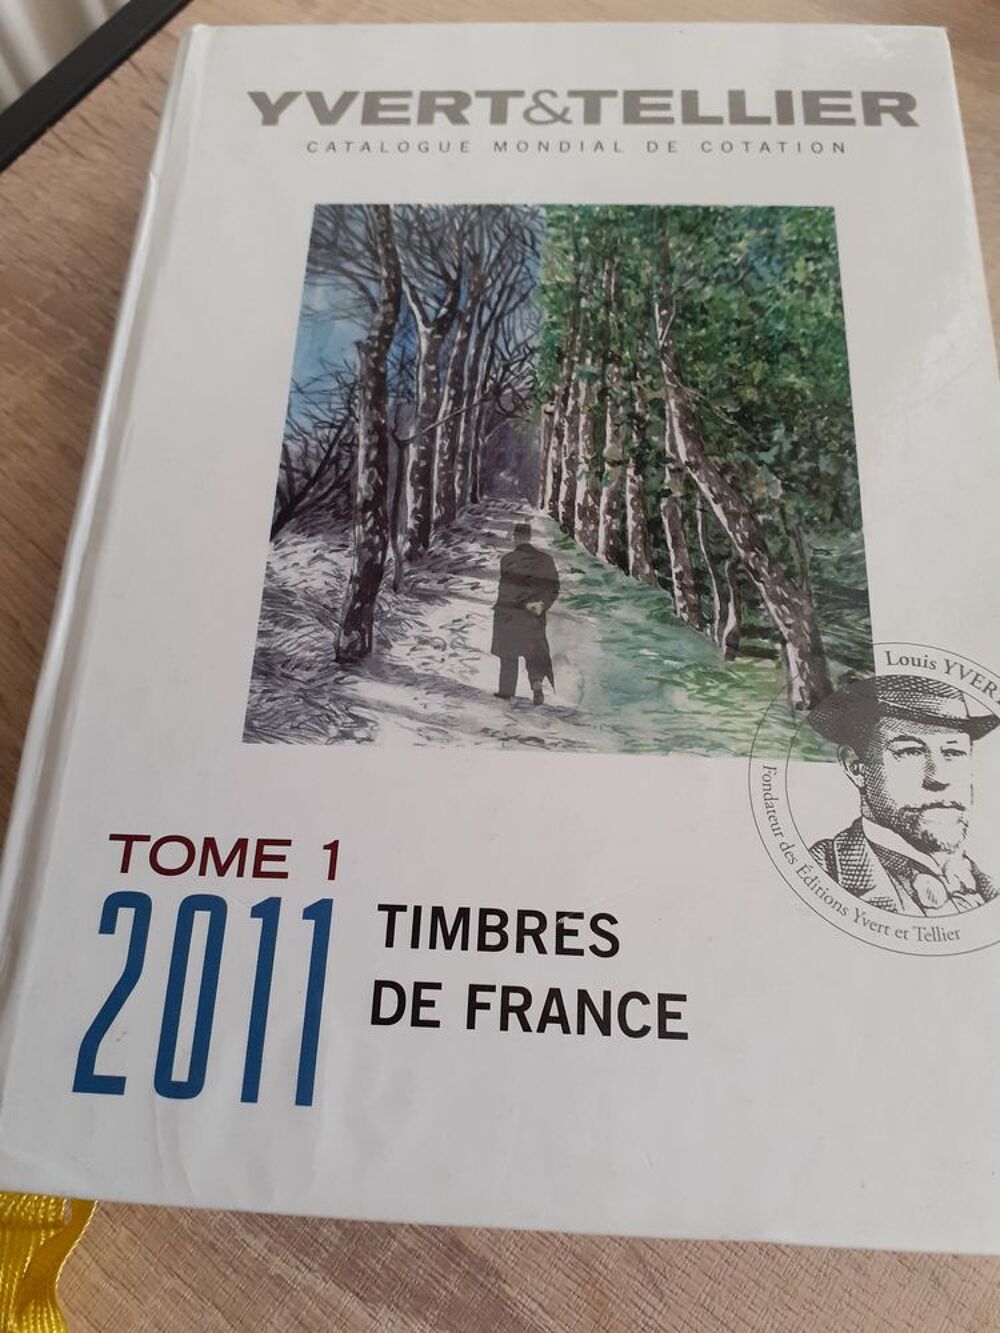 Timbres de France catalogue 2011 Livres et BD